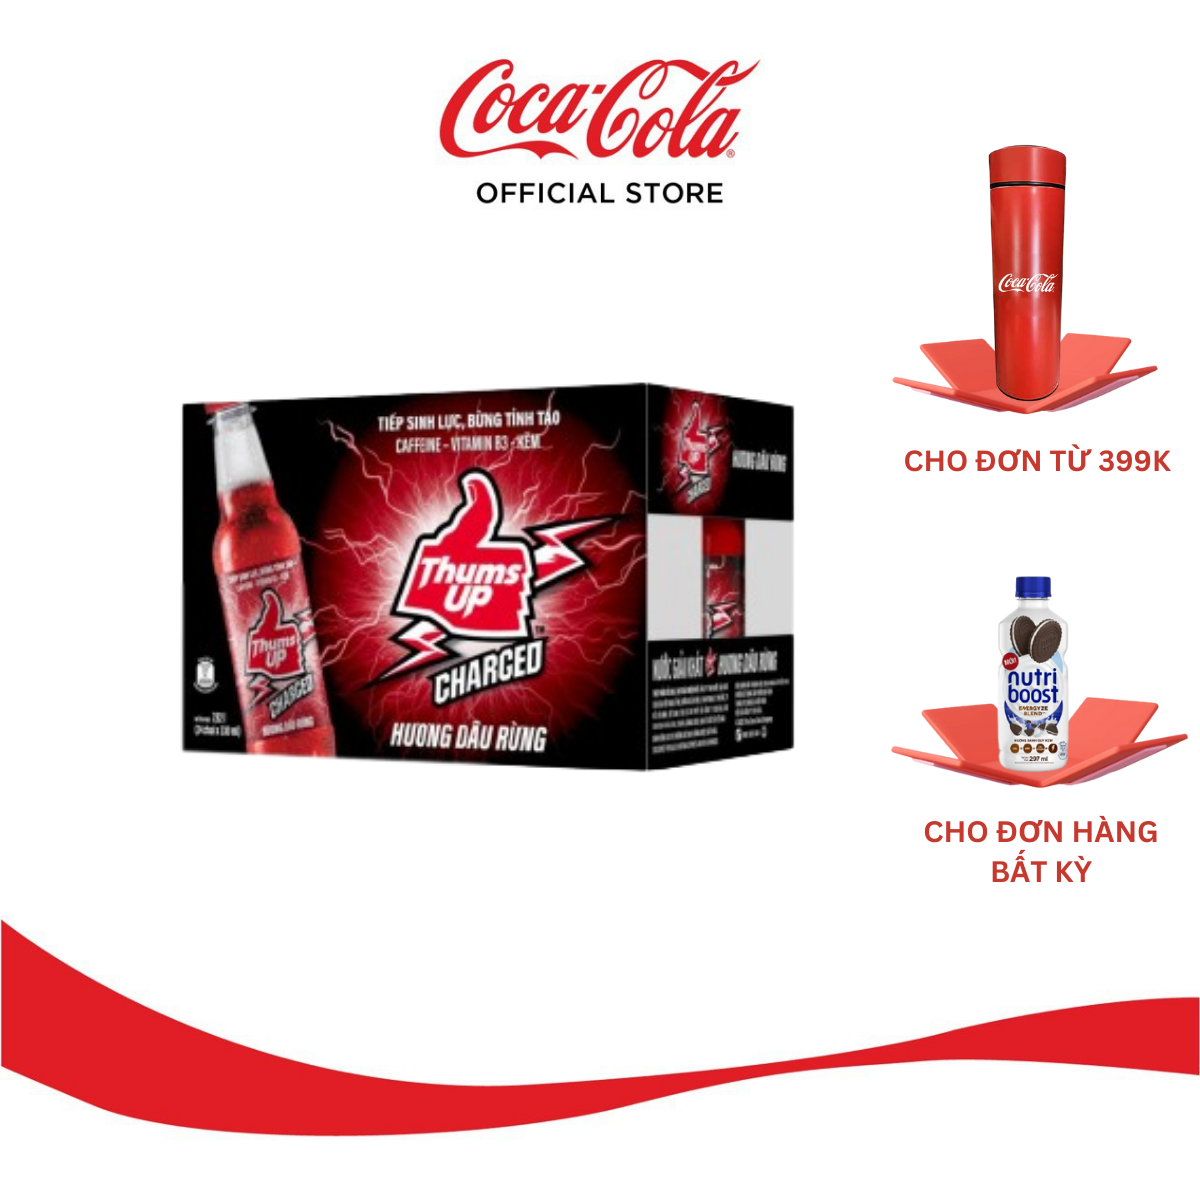 Thùng/Lốc 24 Chai Nước Tăng Lực Giải Khát Thums Up Hương Dâu Rừng 330ml x 24 Coca-Cola Official Store